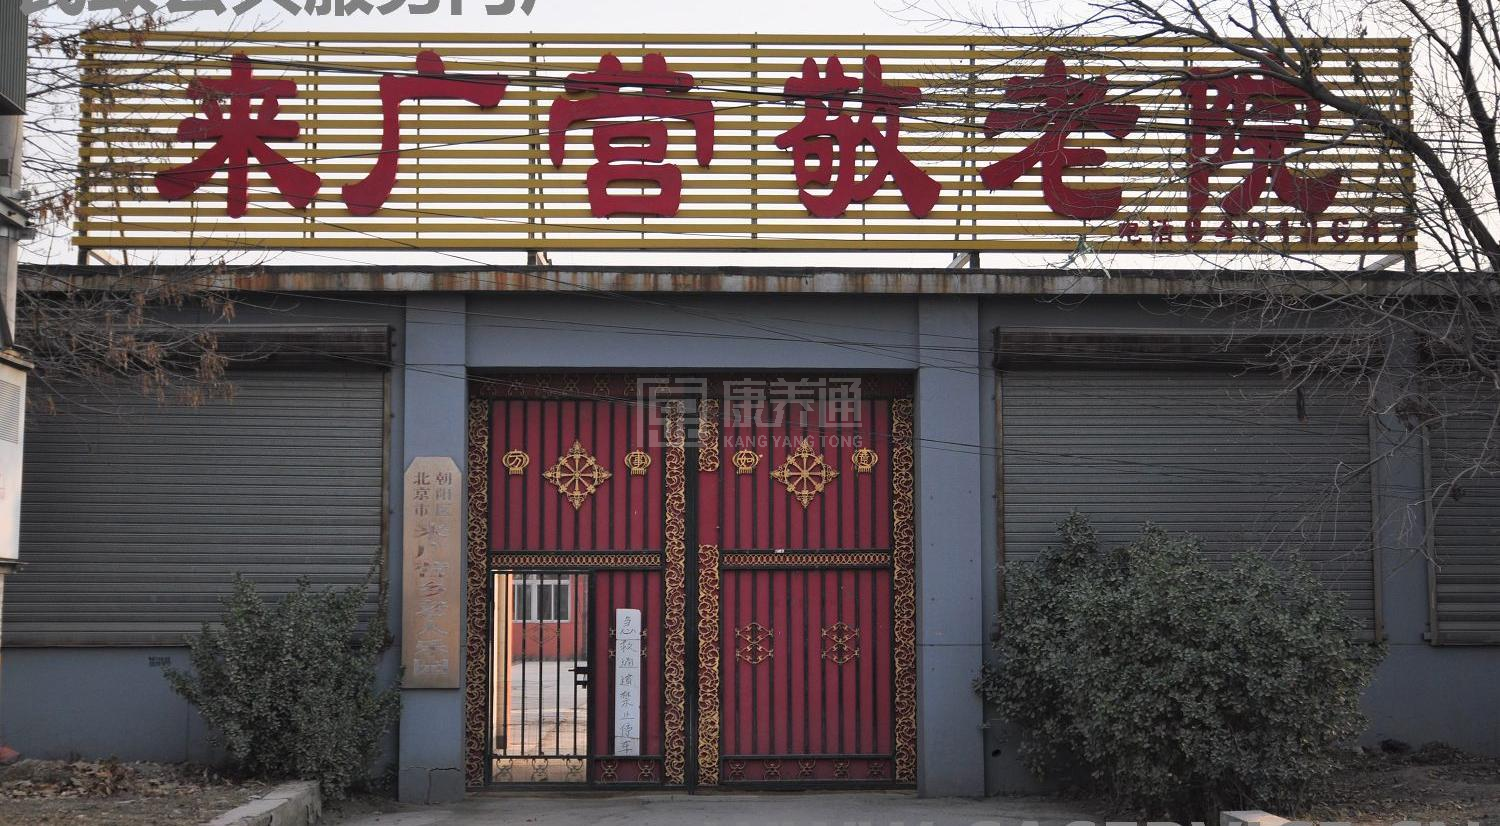 北京市朝阳区来广营老人乐园服务项目图6让长者体面而尊严地生活